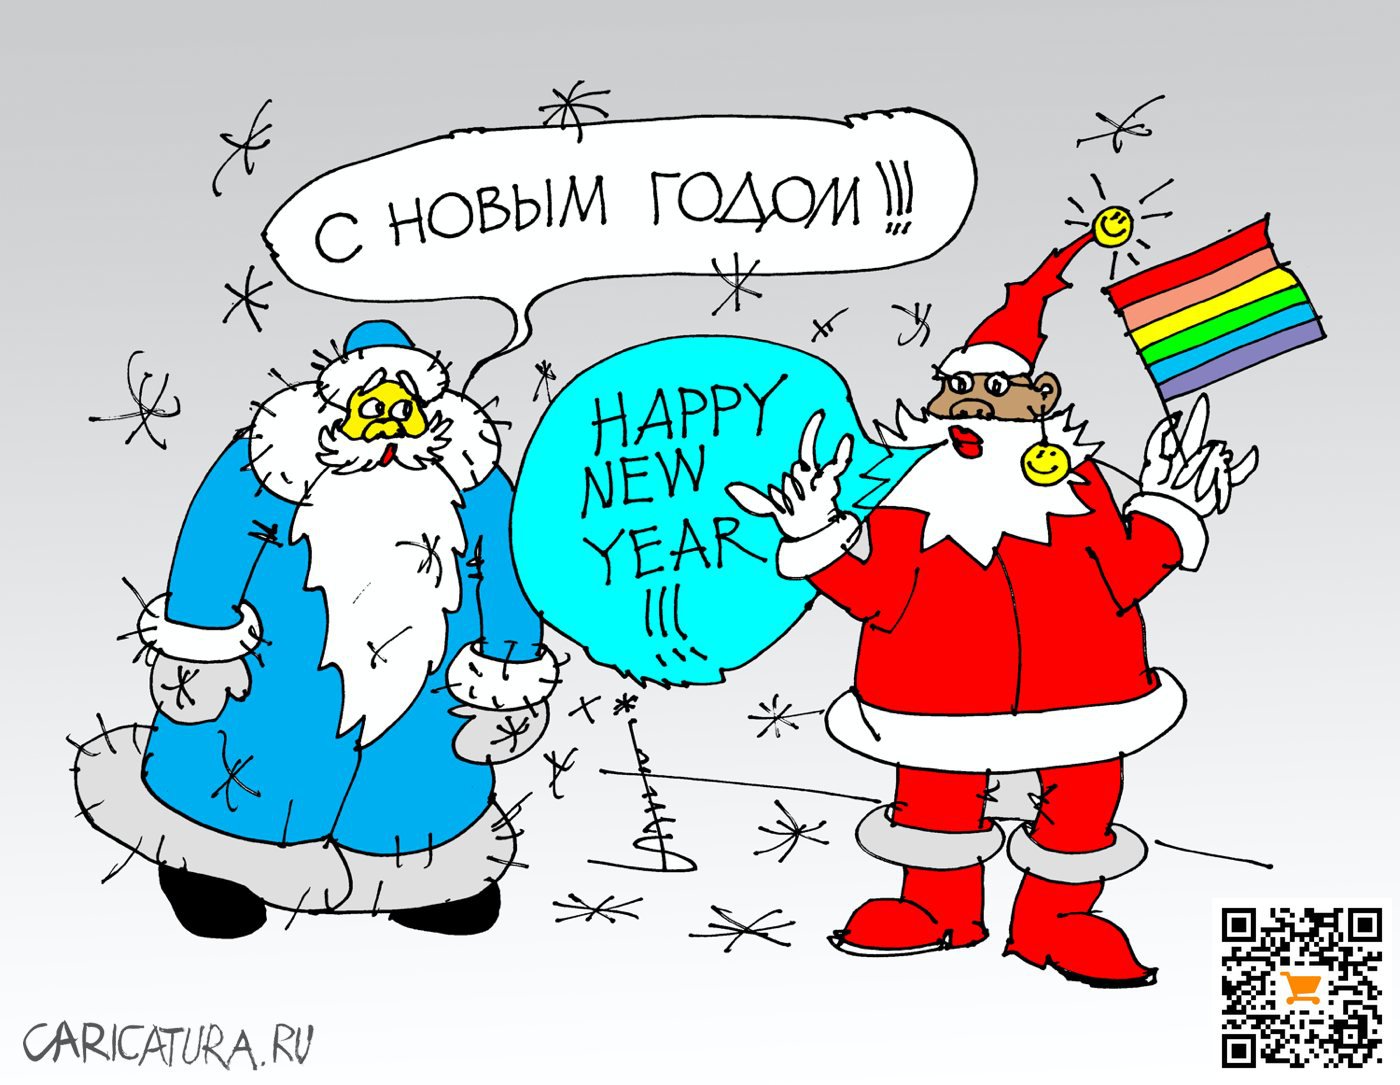 Карикатура "Две стороны одного праздника...", Юрий Санников